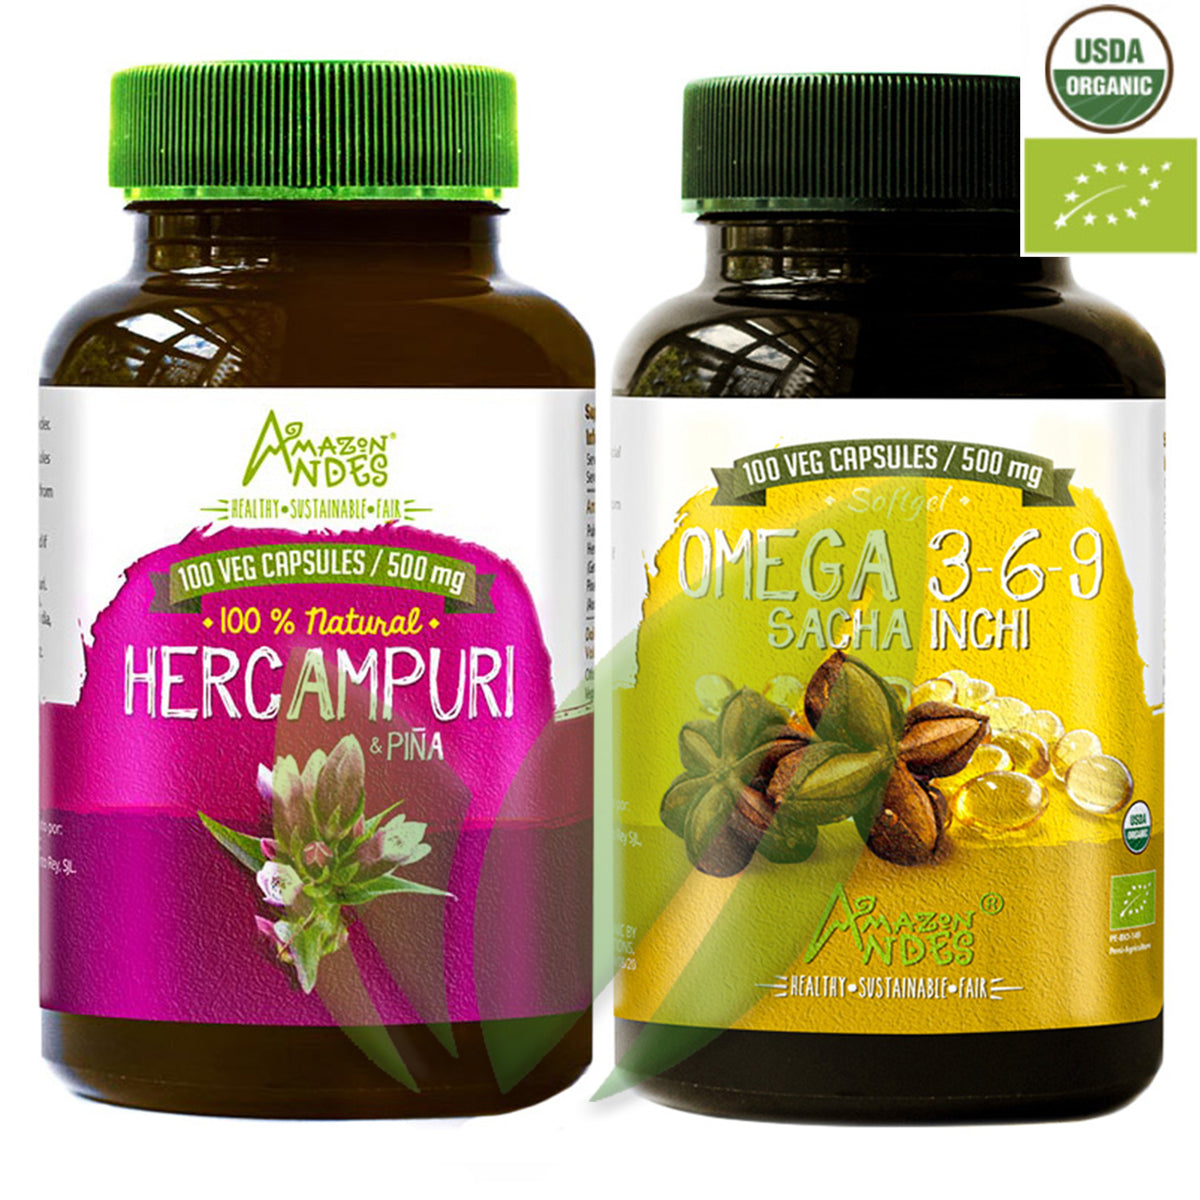 Pack Sin  Colesterol: Omega 3-6-9 Sacha Inchi (500 mg x 100 caps) + Hercampuri (500 mg x 100 caps)